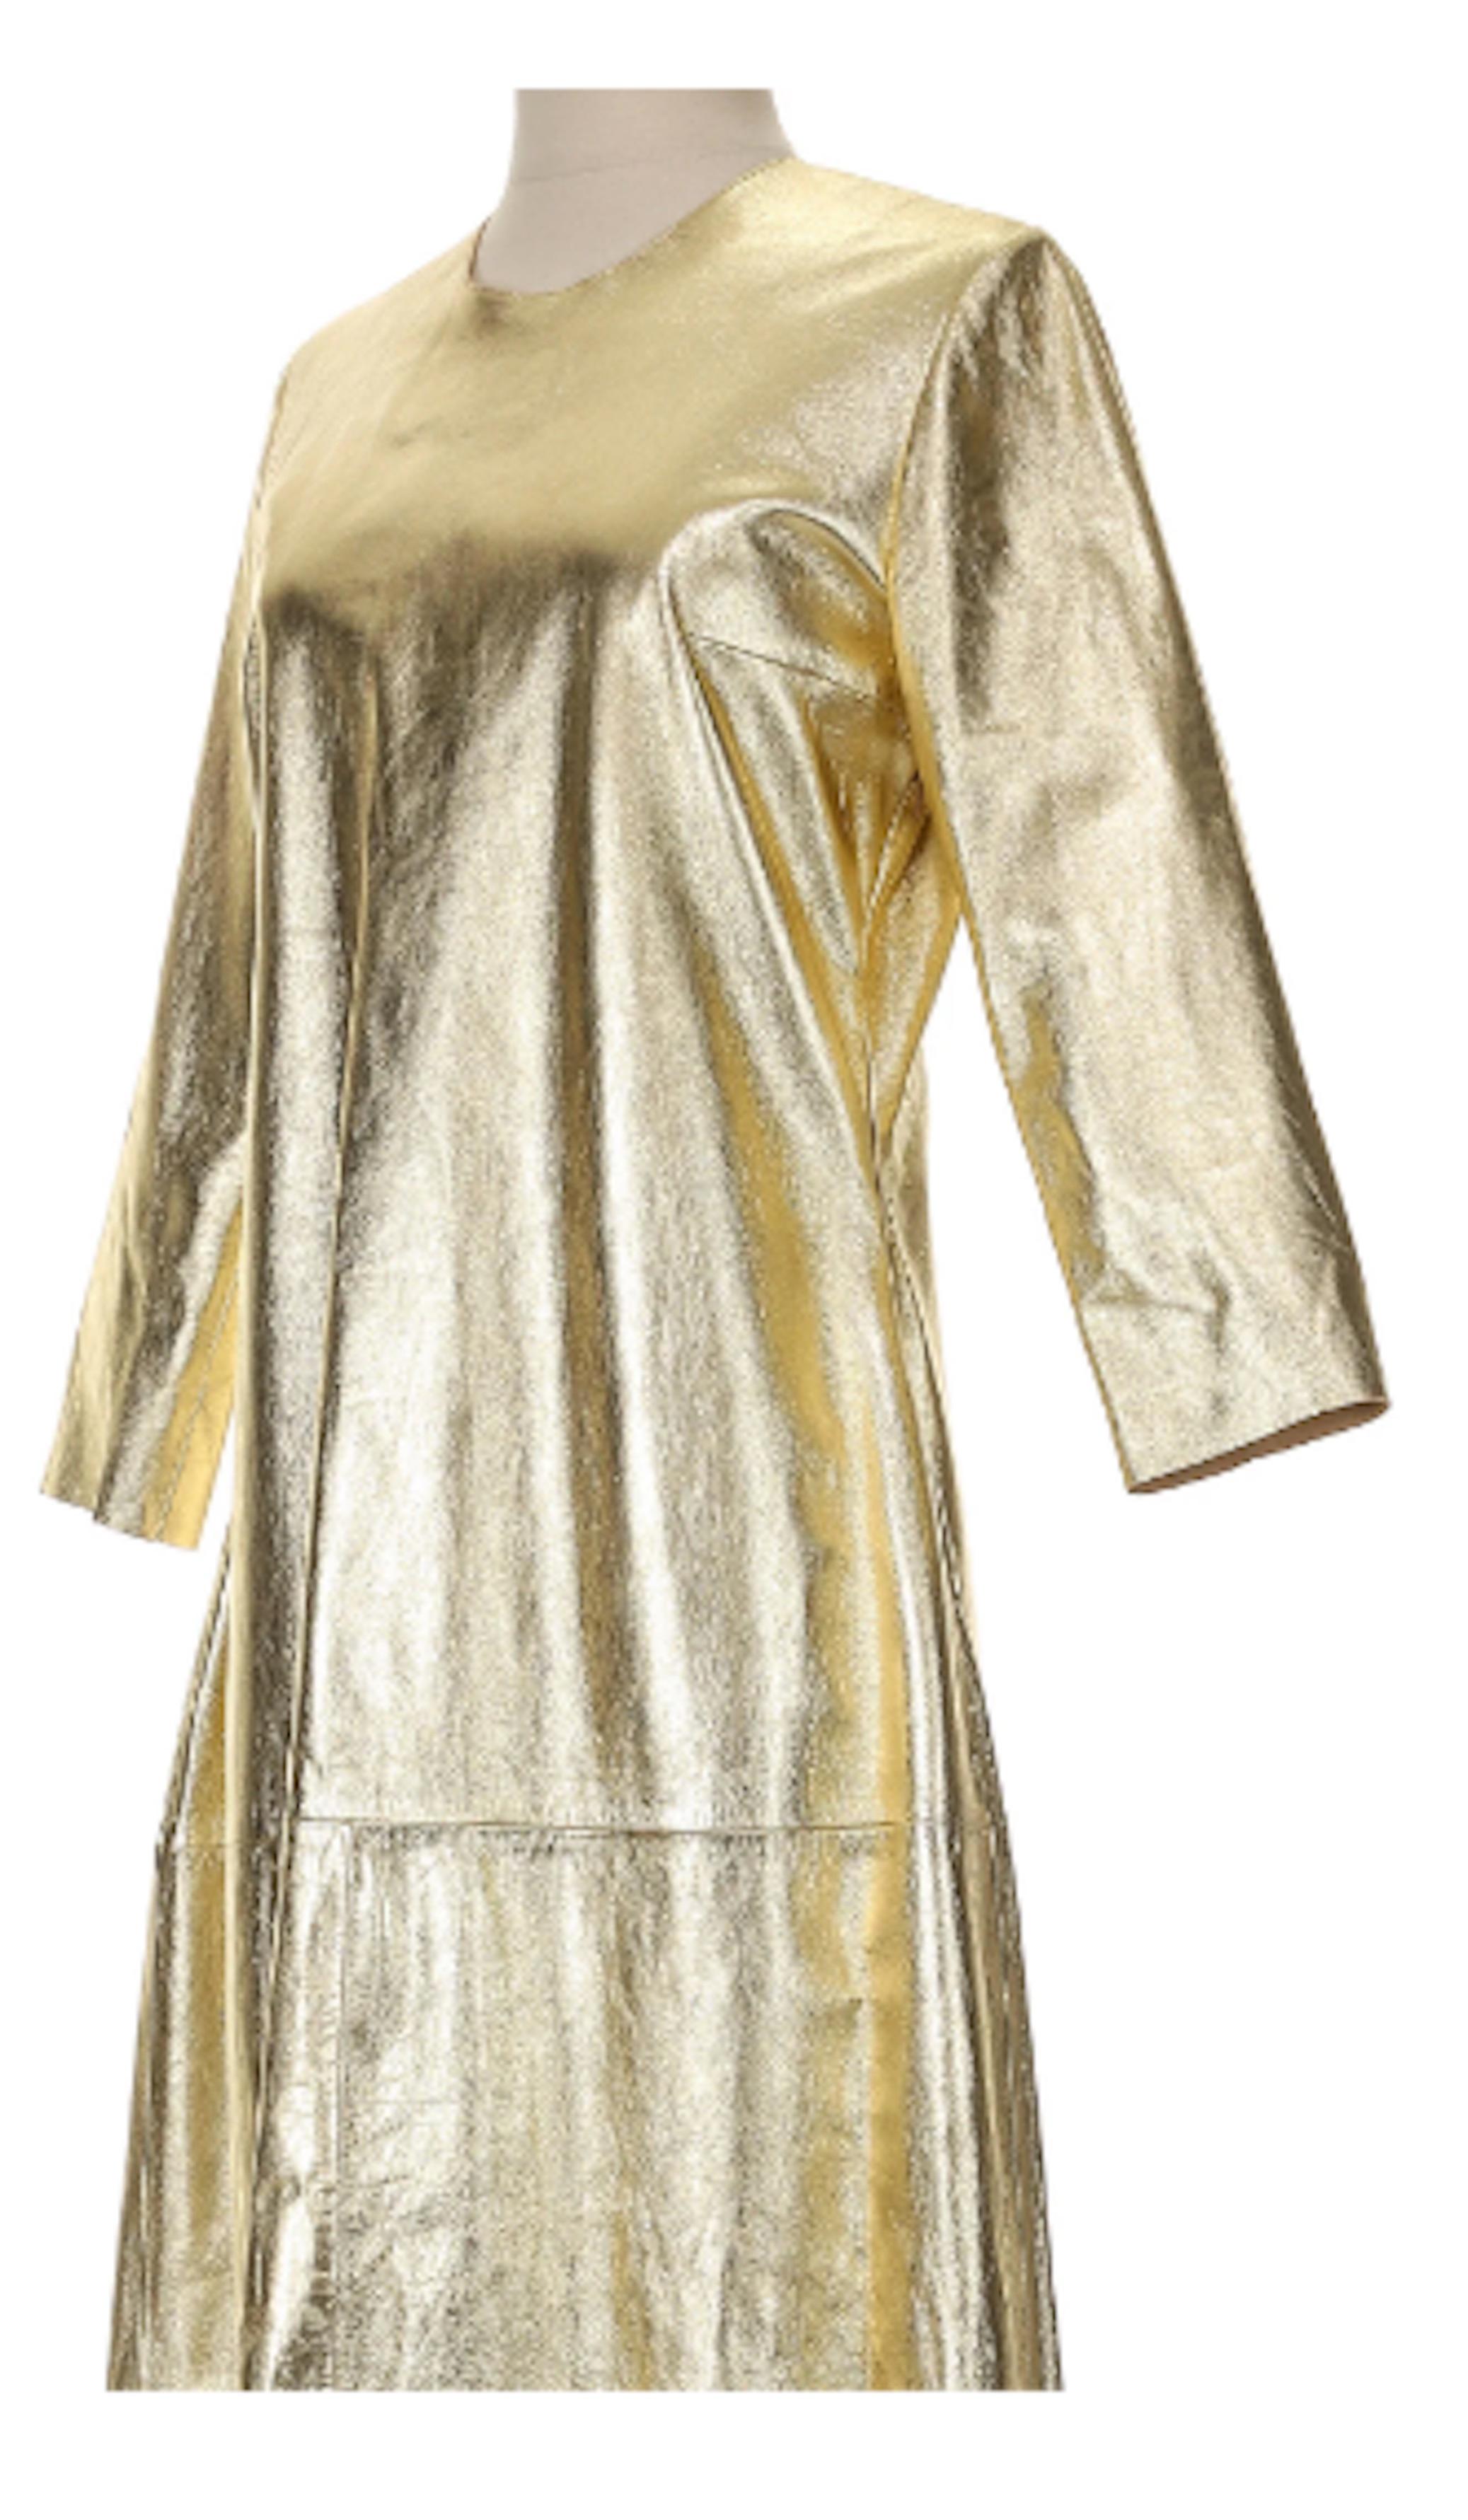 Jean-Claude Jitrois Kleid mit 3/4-Ärmeln aus goldenem Leder, hergestellt aus 100% Lammleder. Außergewöhnliches und einzigartiges bodenlanges Kleid mit Spitzendetails im Rücken und einem hochgeschlossenen Saum
- Verdeckter Reißverschluss auf der